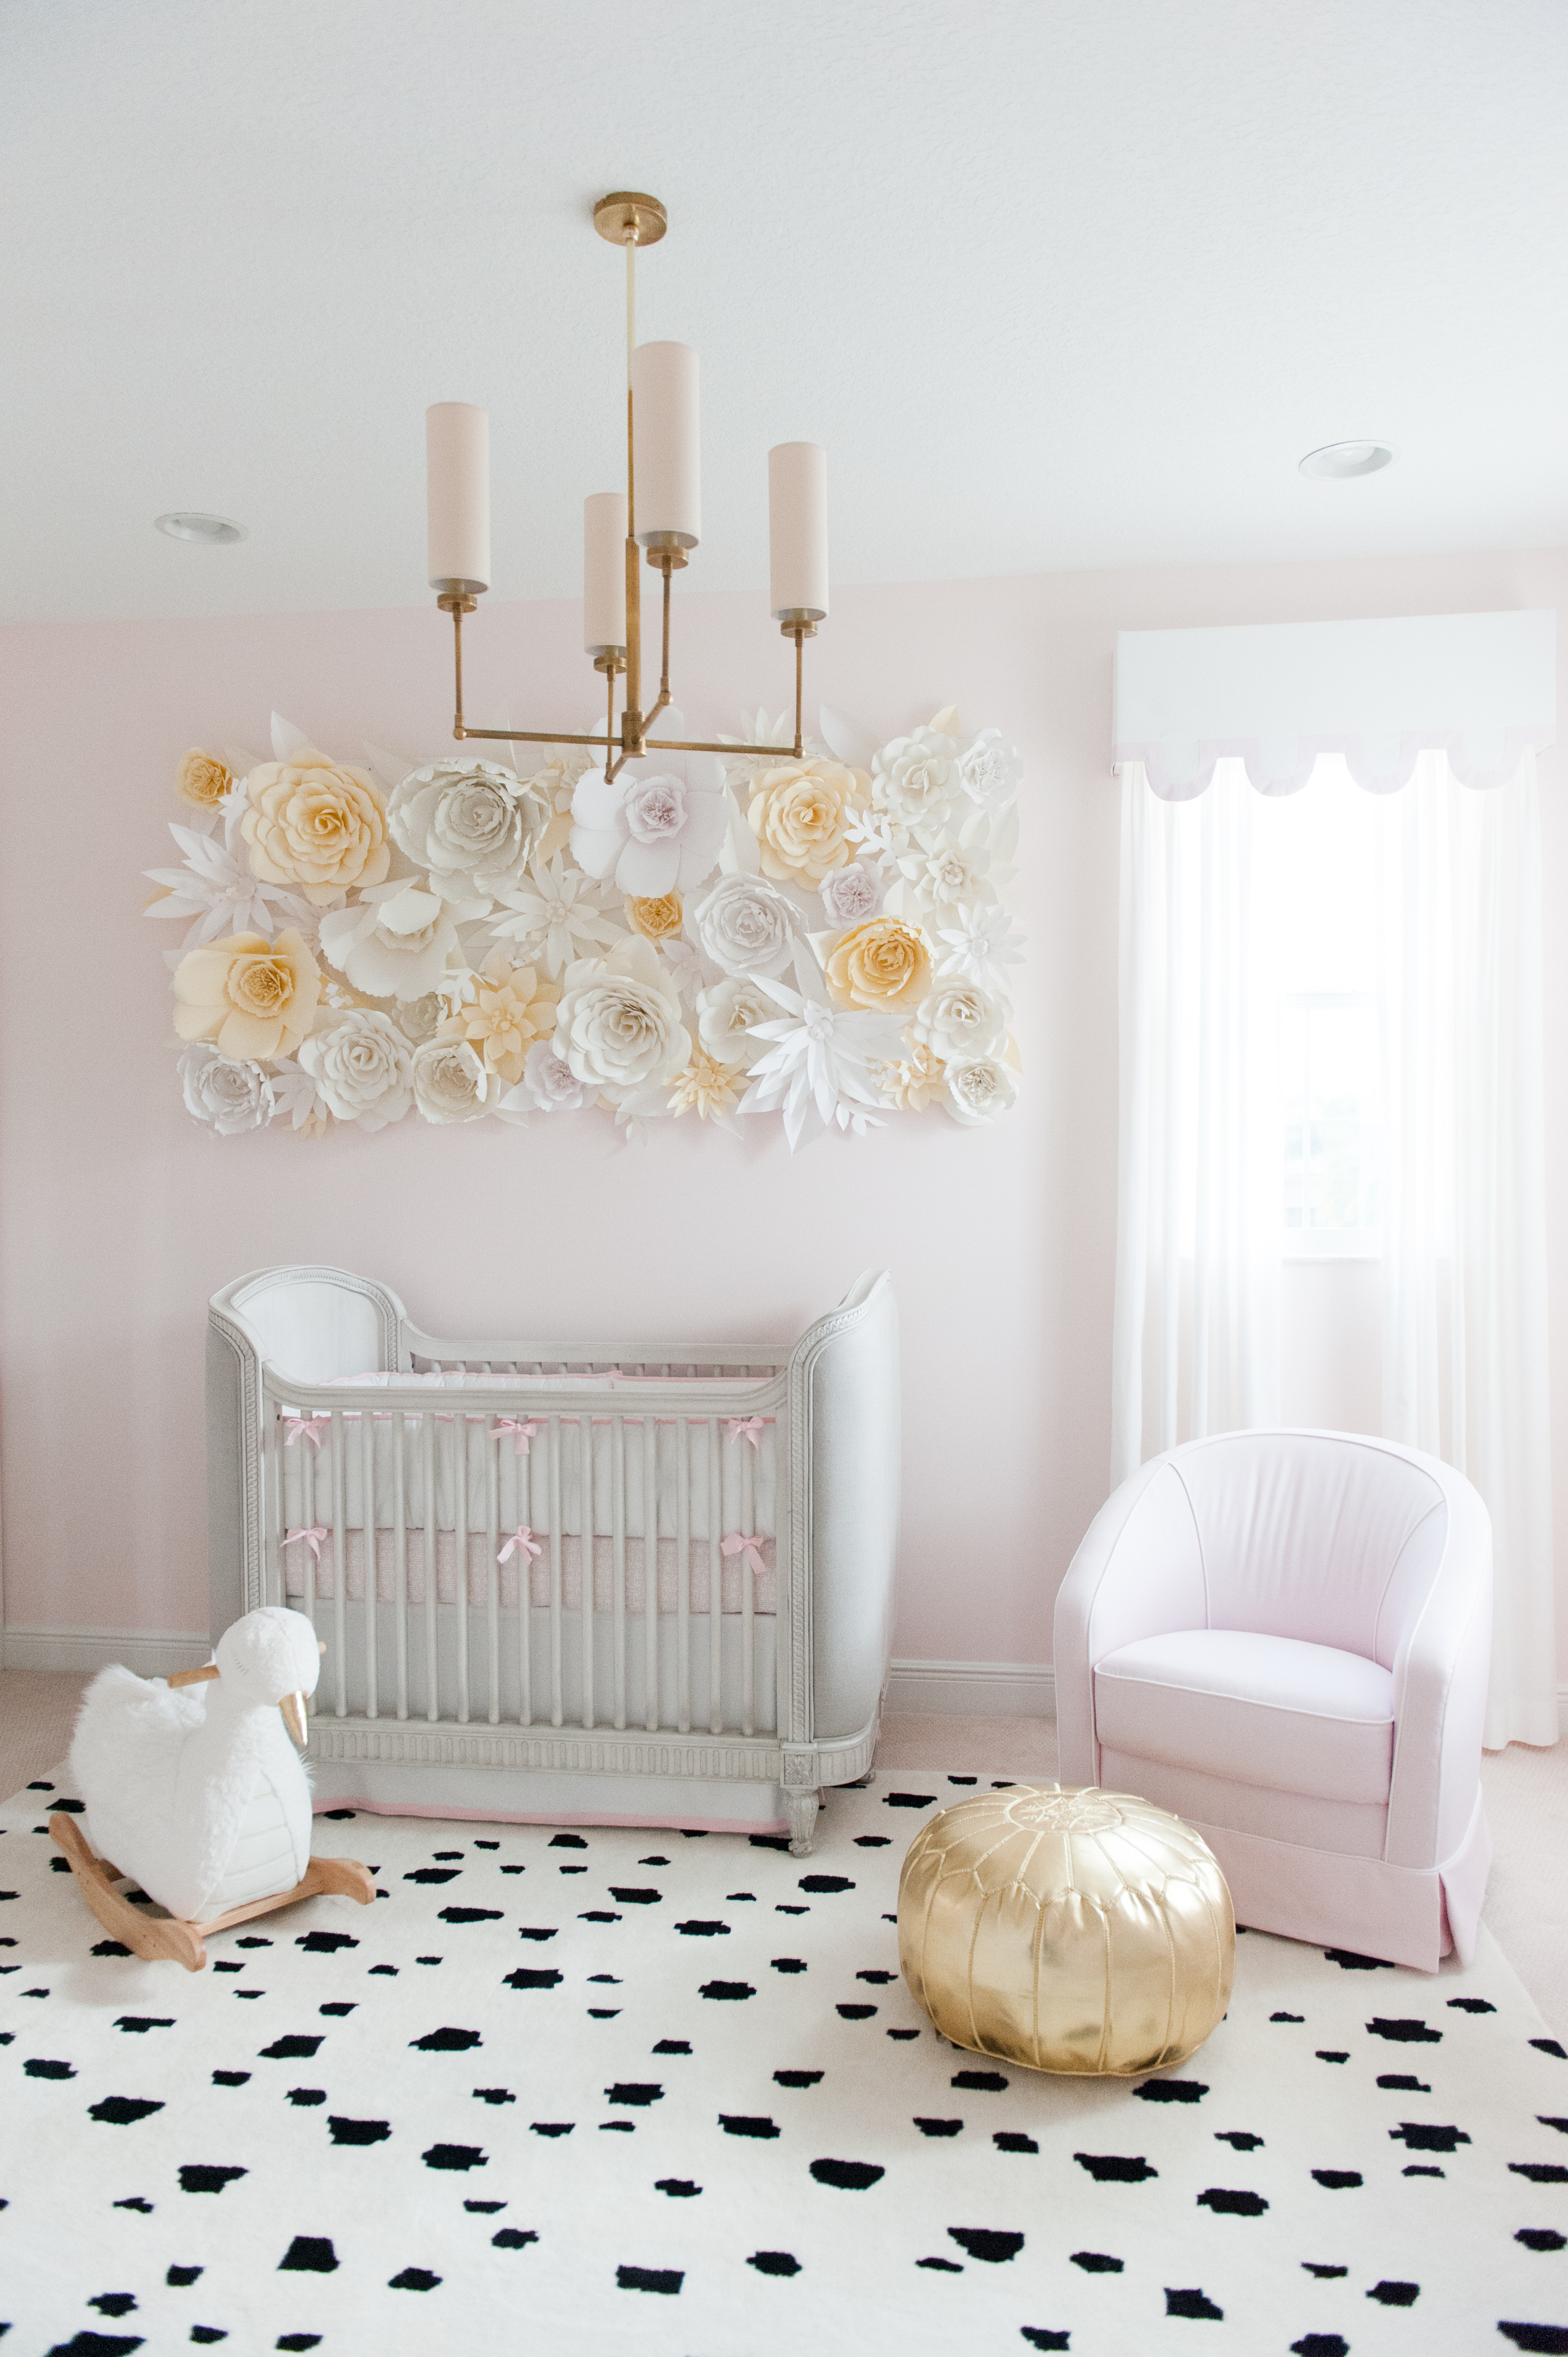 3D Paper Flower Wall Decor in Girl's Nursery